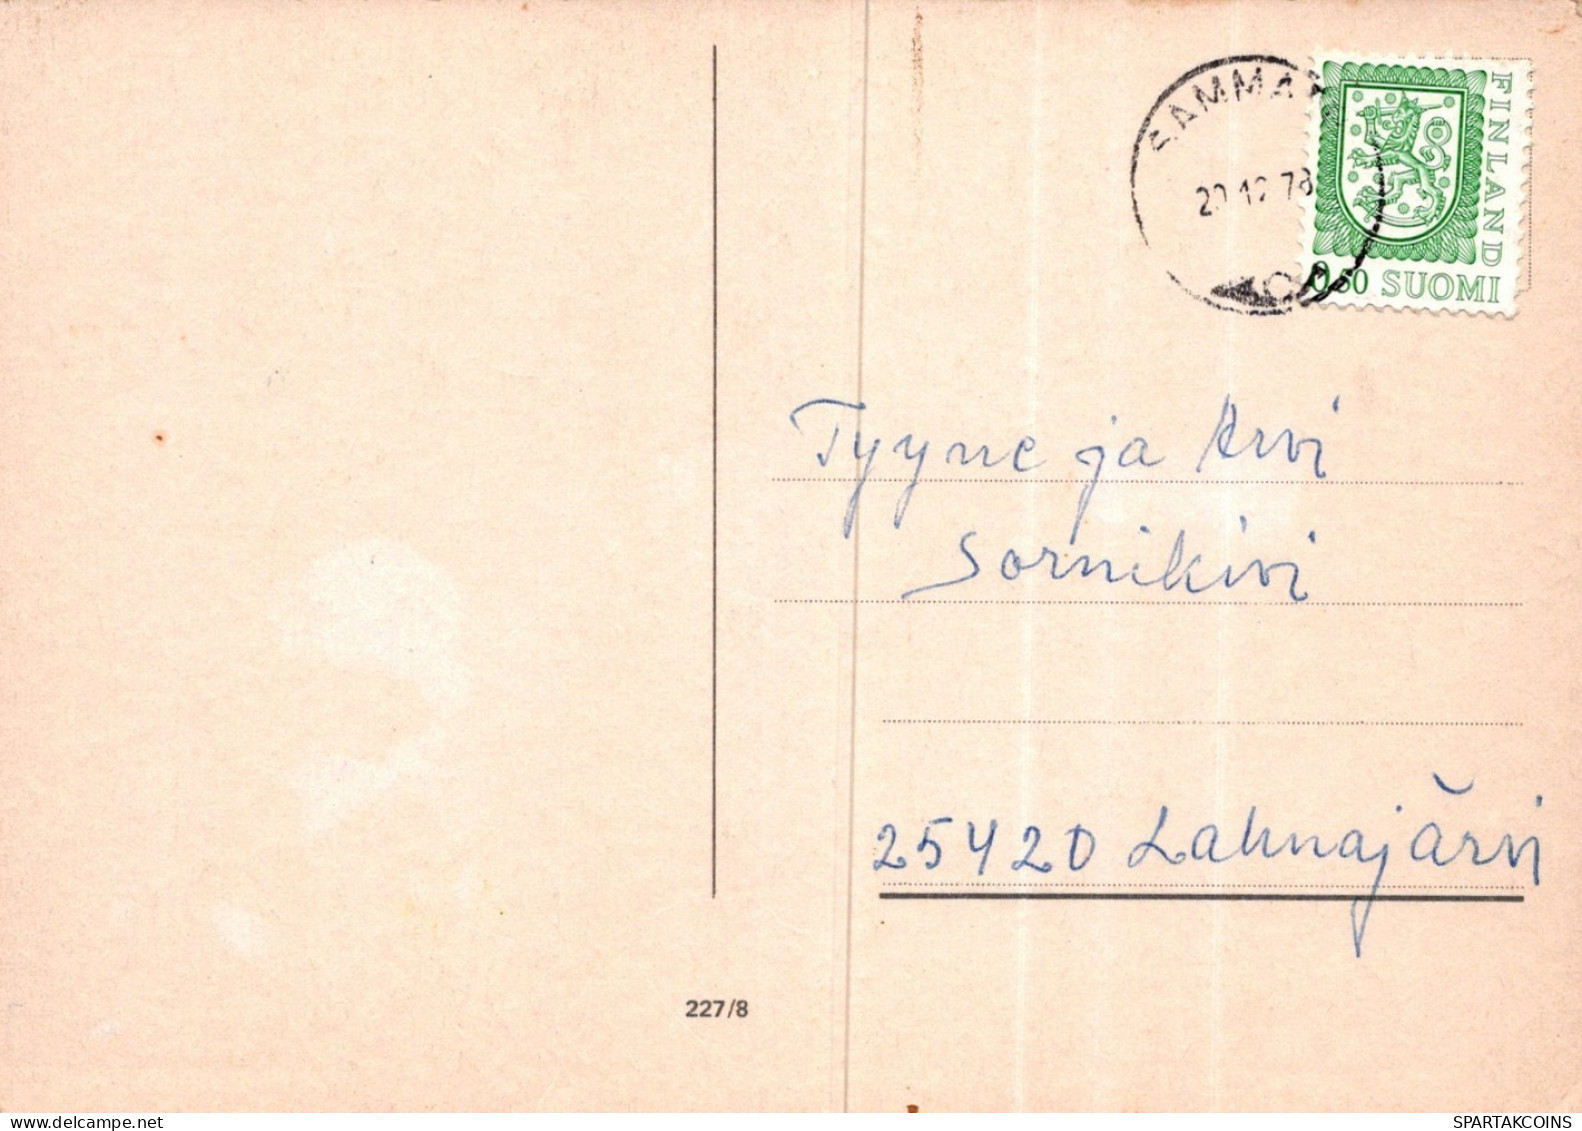 WEIHNACHTSMANN SANTA CLAUS WEIHNACHTSFERIEN Vintage Postkarte CPSM #PAK442.DE - Santa Claus